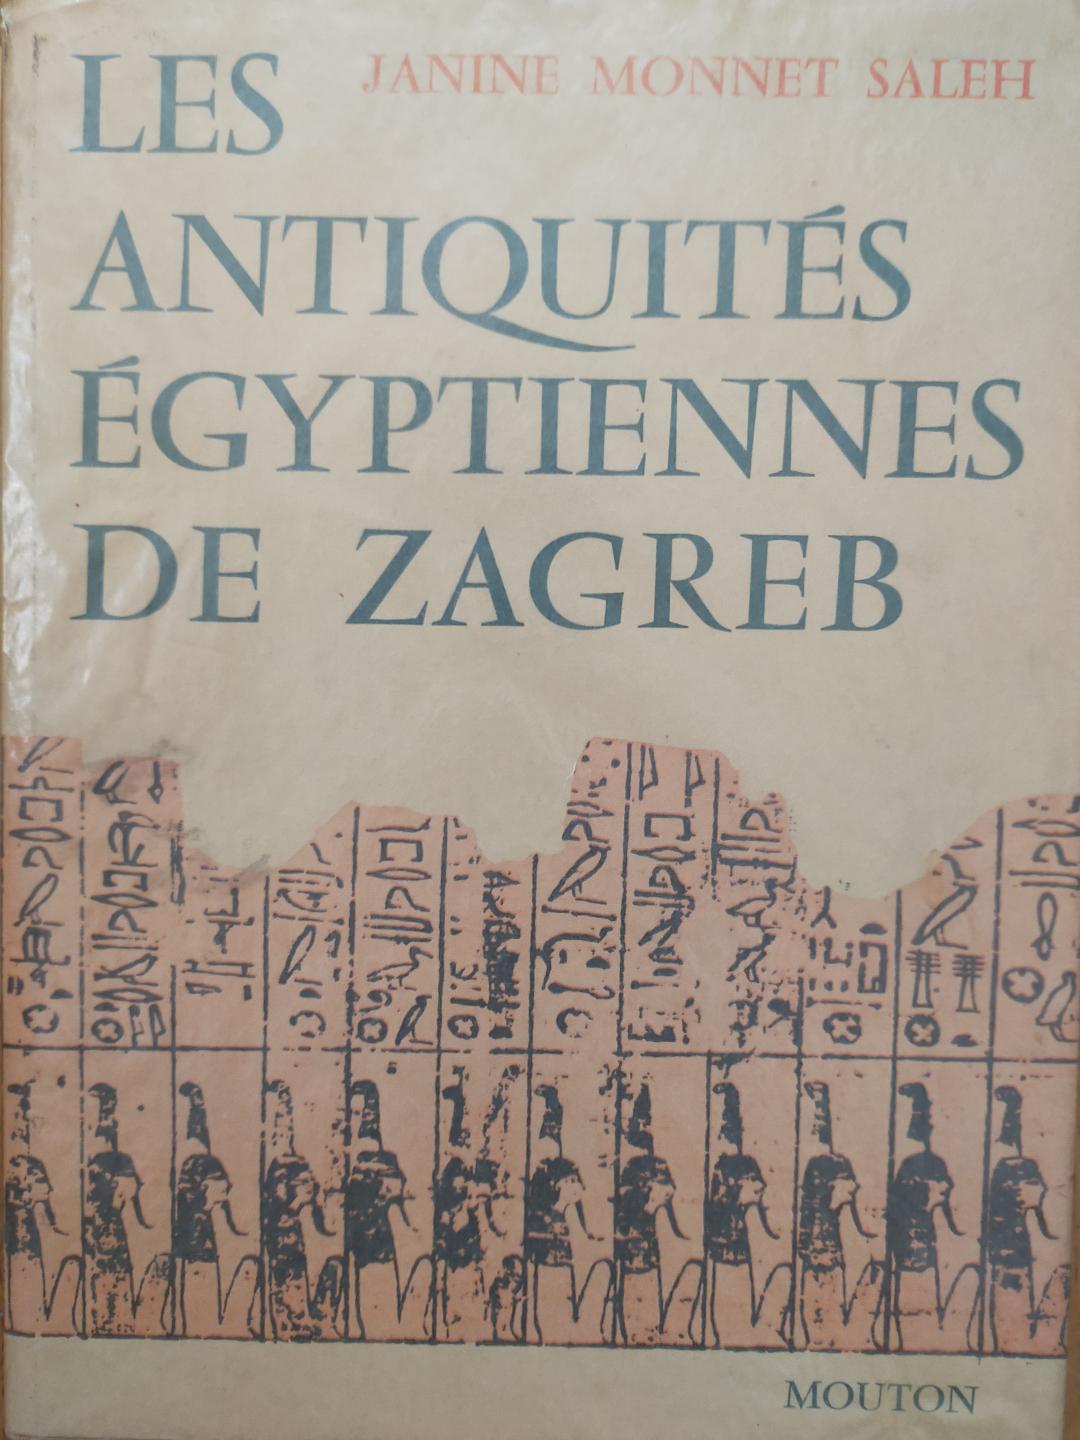 Les Antiquités Egyptiennes de Zagreb.